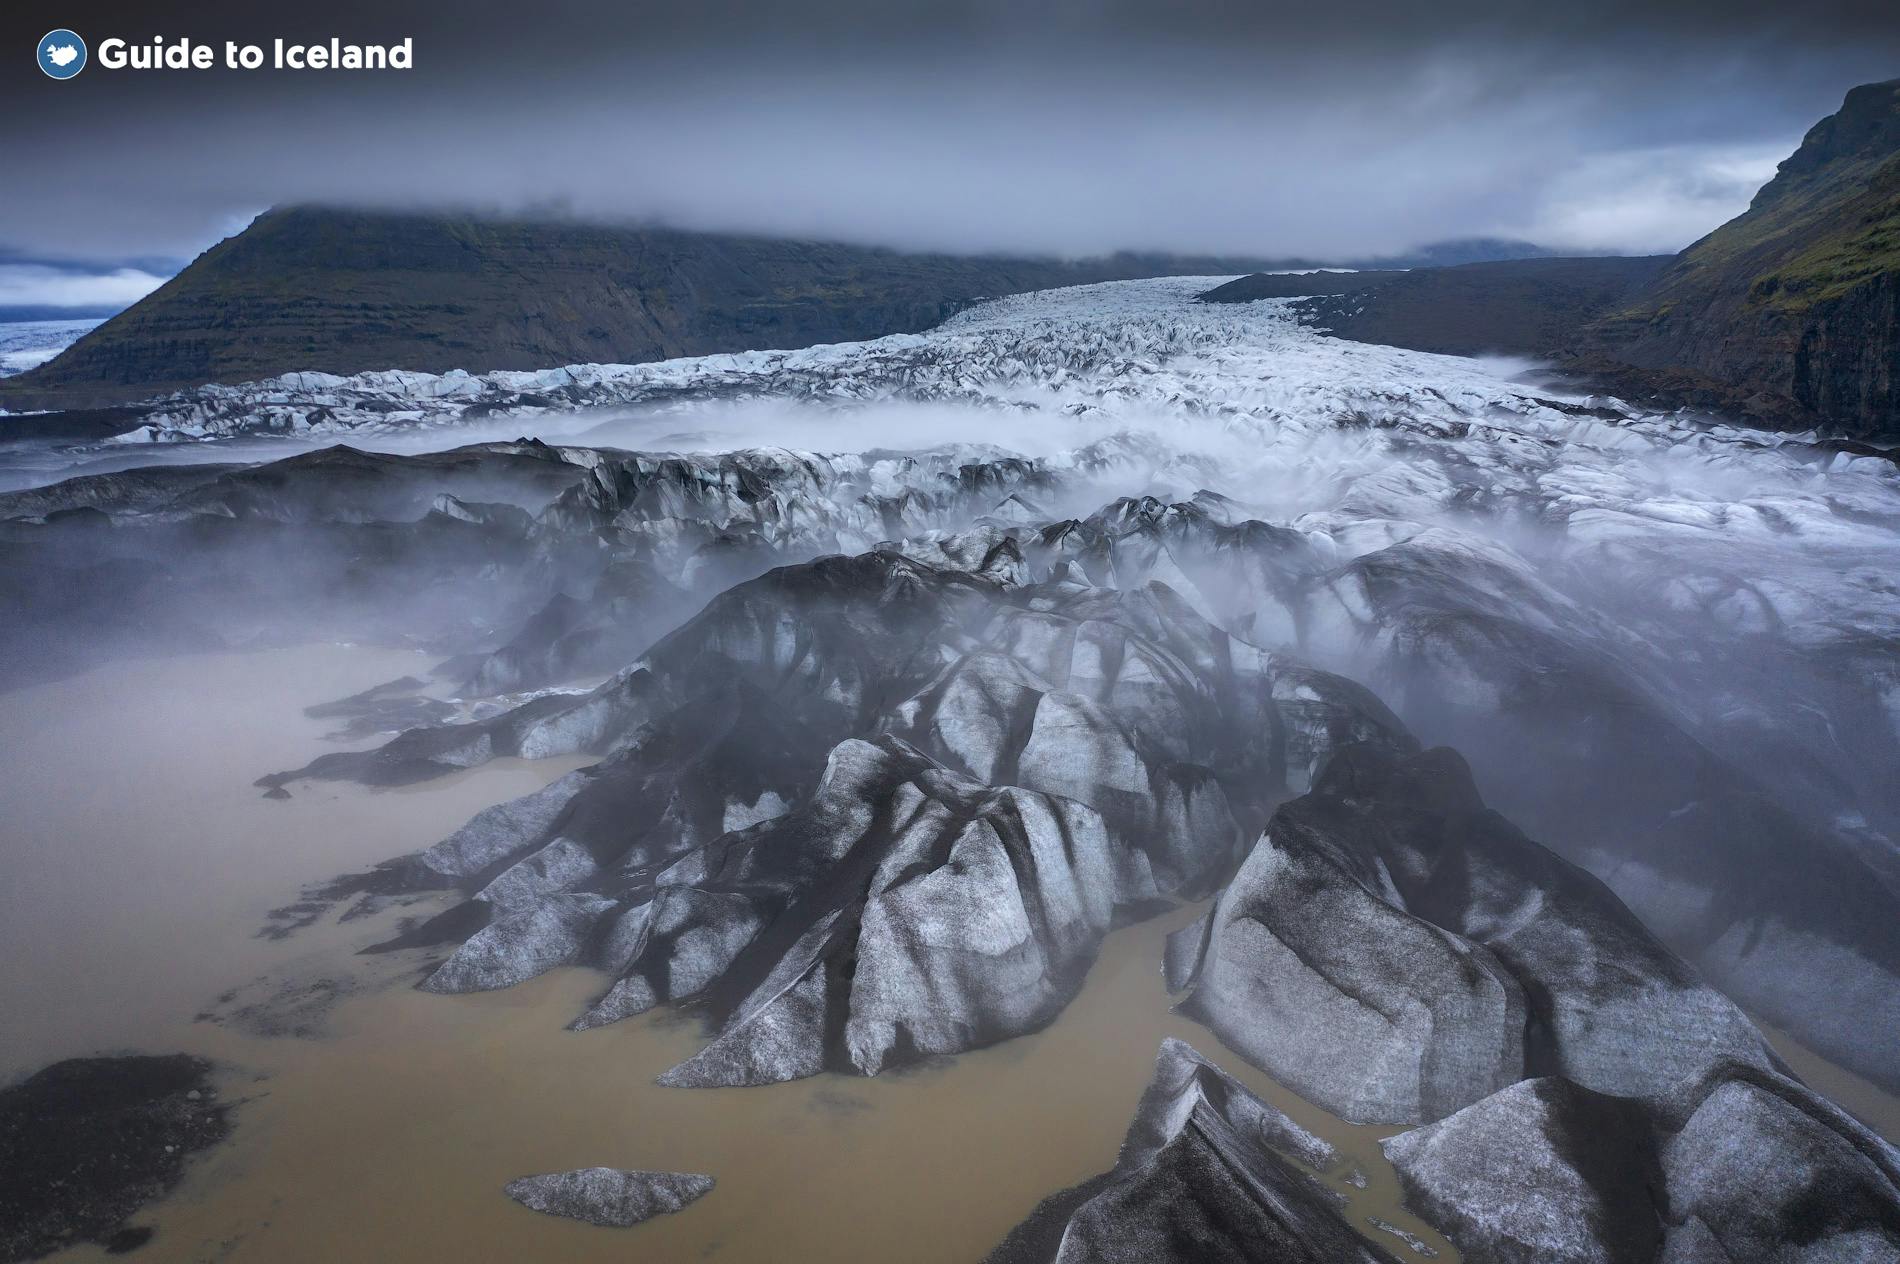 Una ripresa dall'alto di una lingua glaciale, nella costa meridionale dell'Islanda.